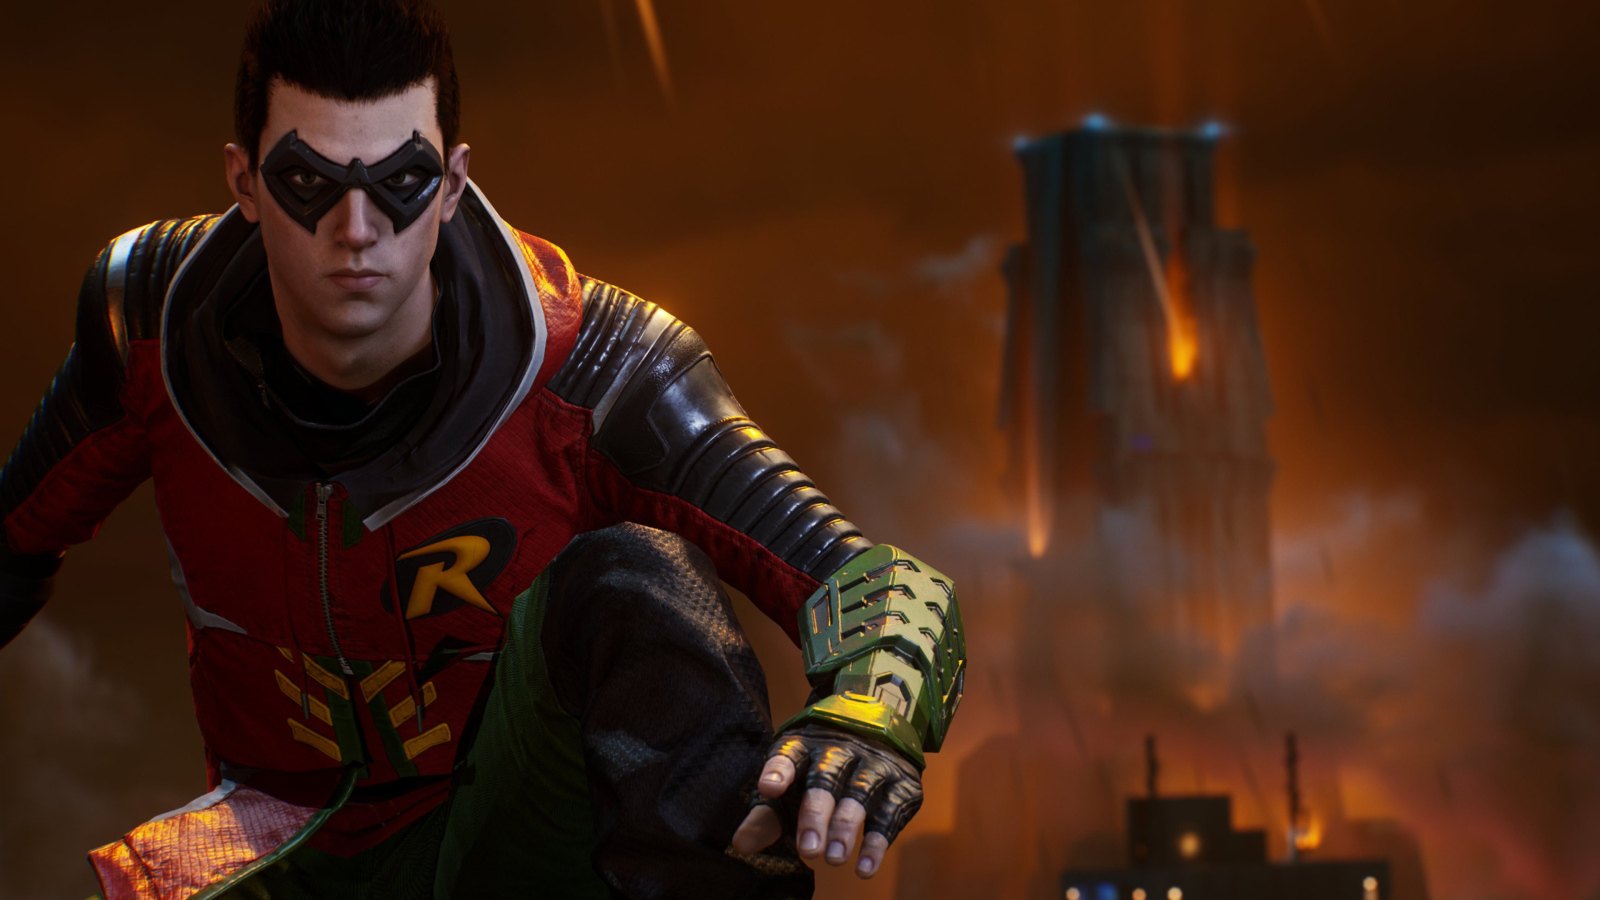 Робин персонаж компьютерной игры Gotham Knights, 2021